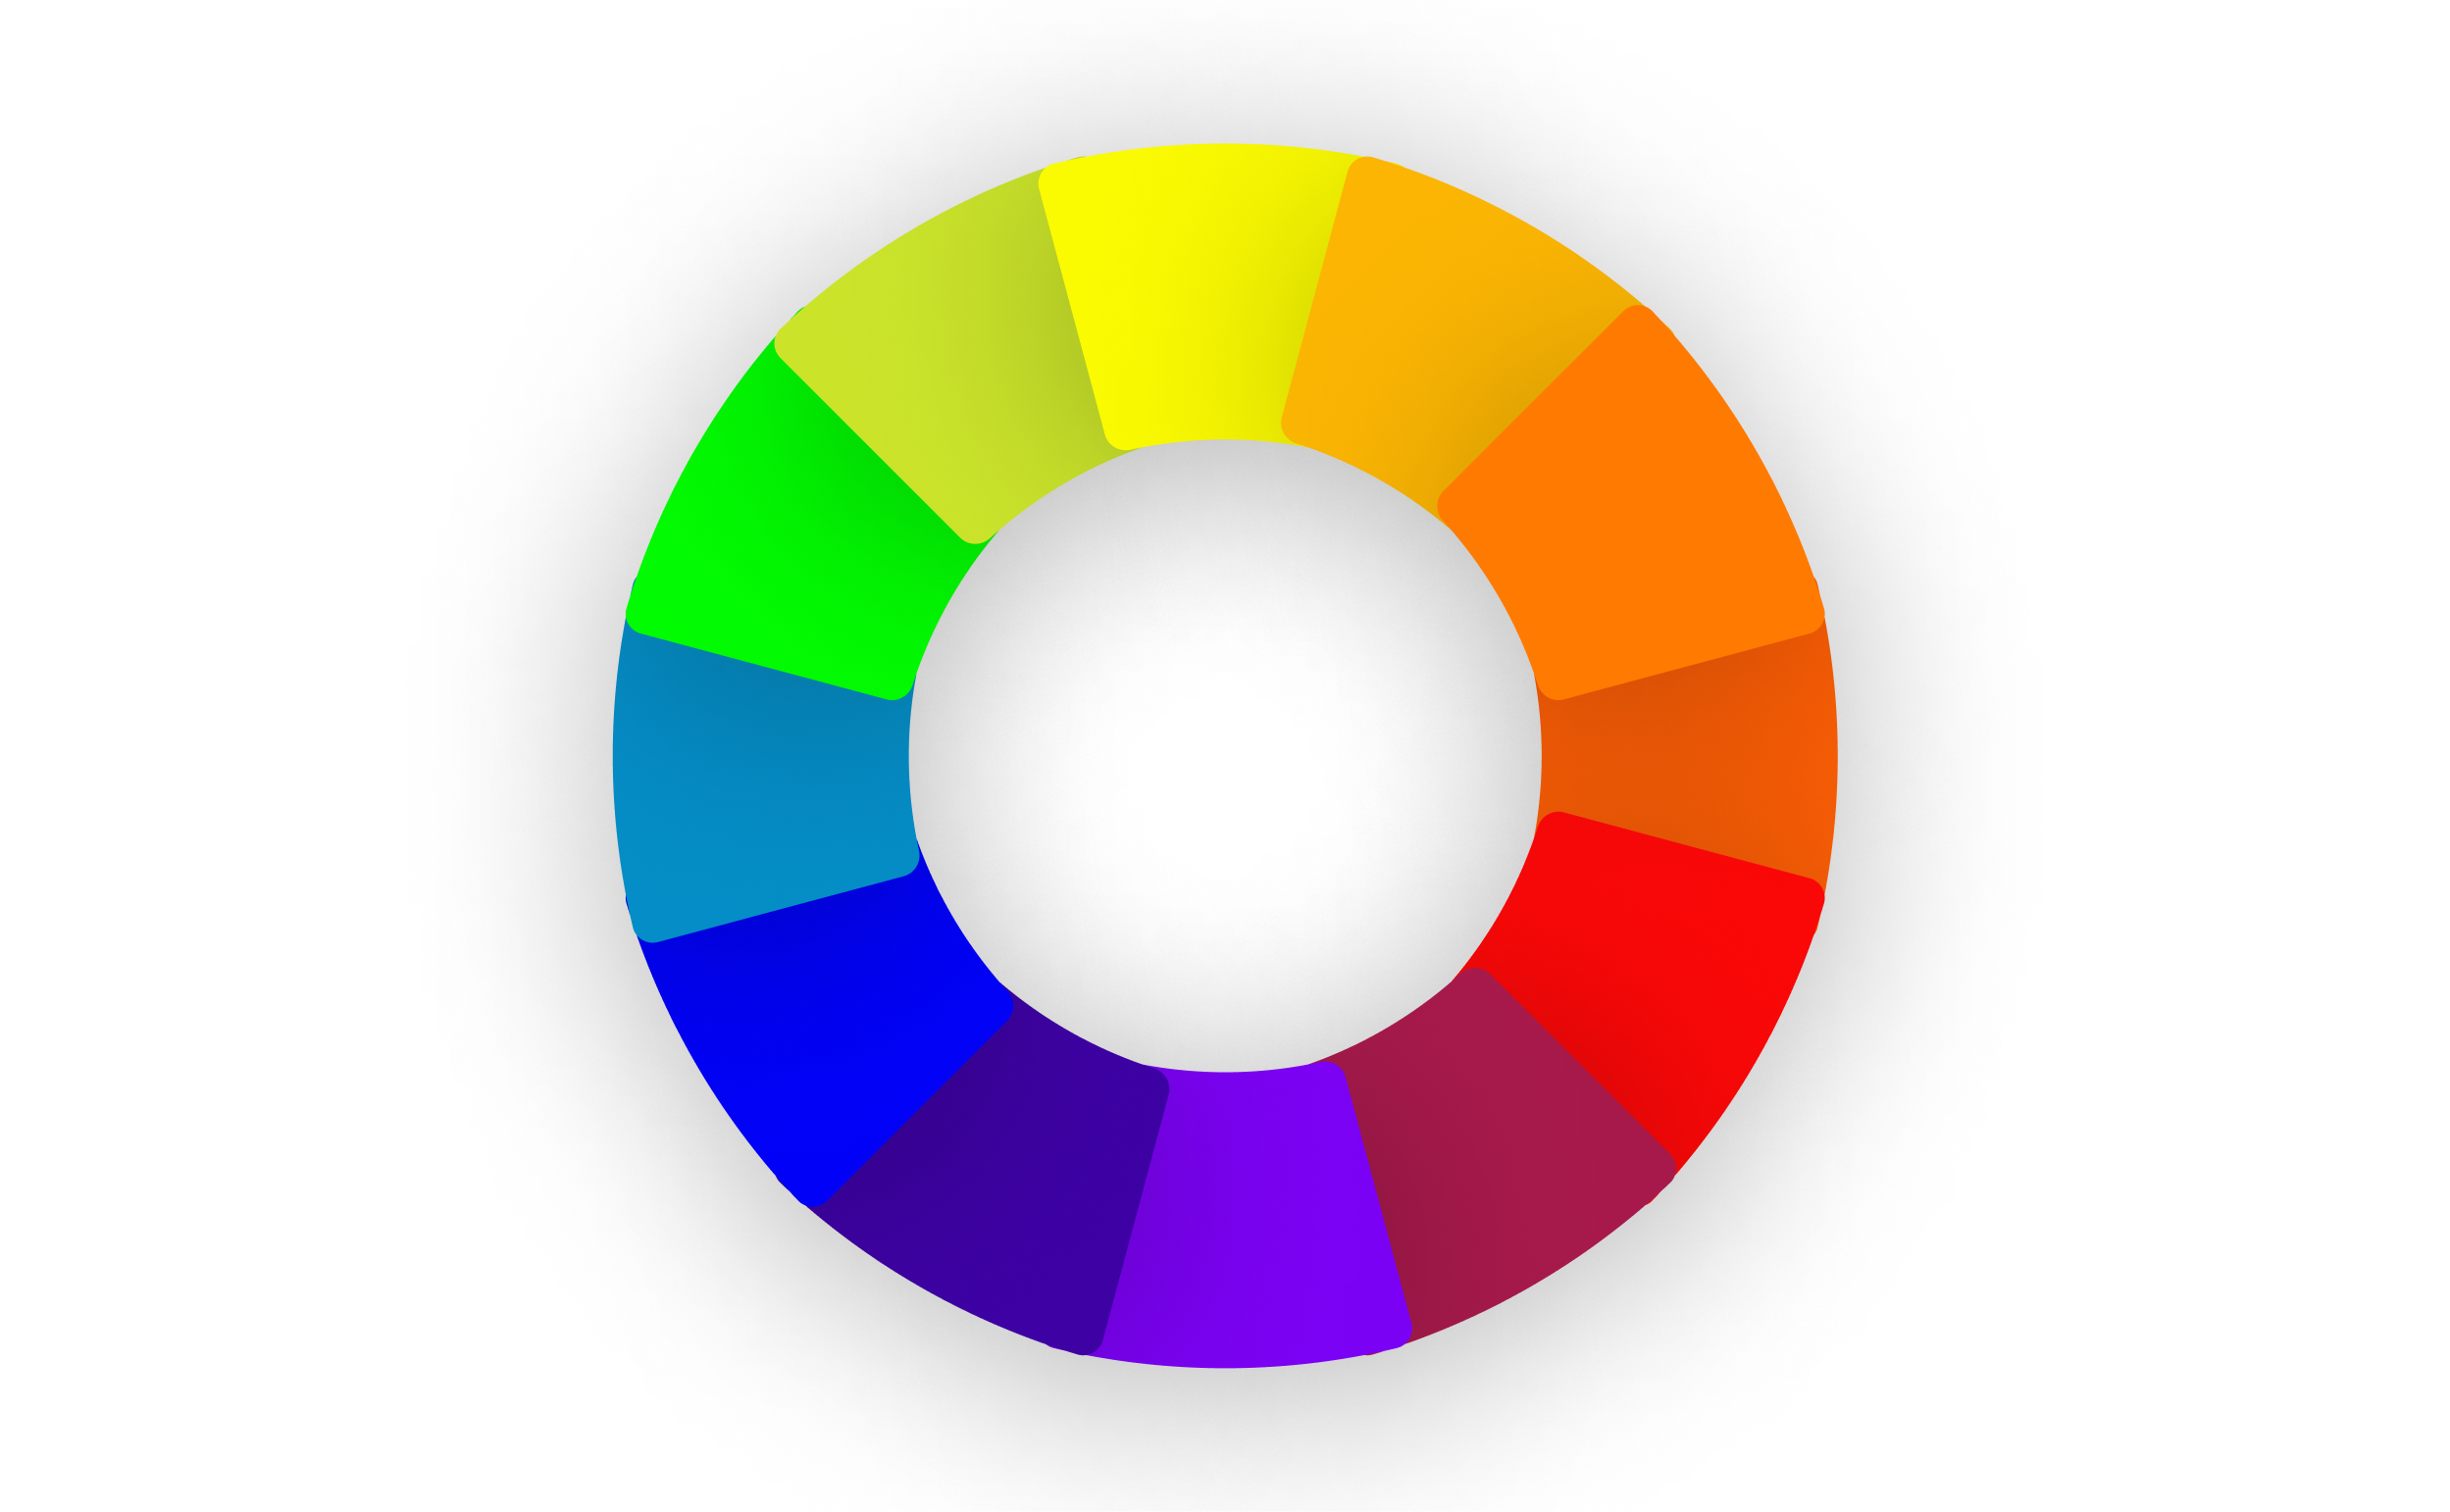 Color Palette Generator: Make Color Palette From Image